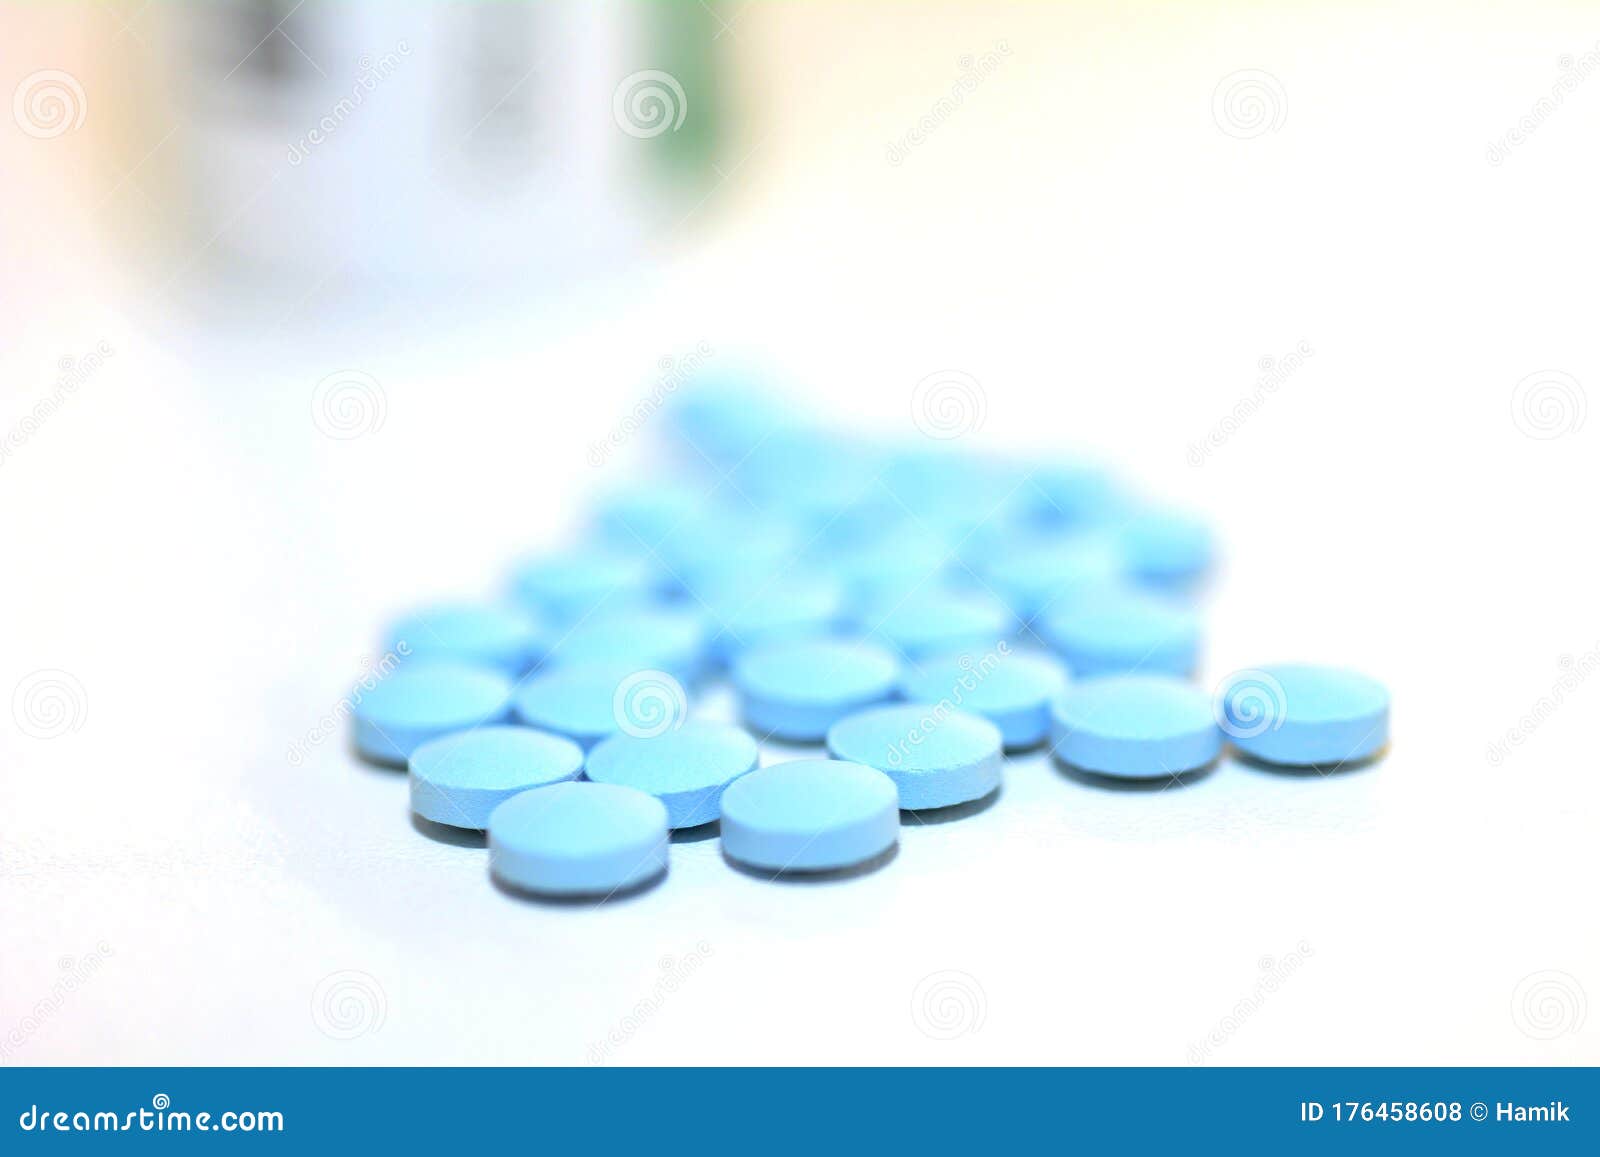 Голубые таблетки наркотики медицинское освидетельствование на наркотики несовершеннолетних